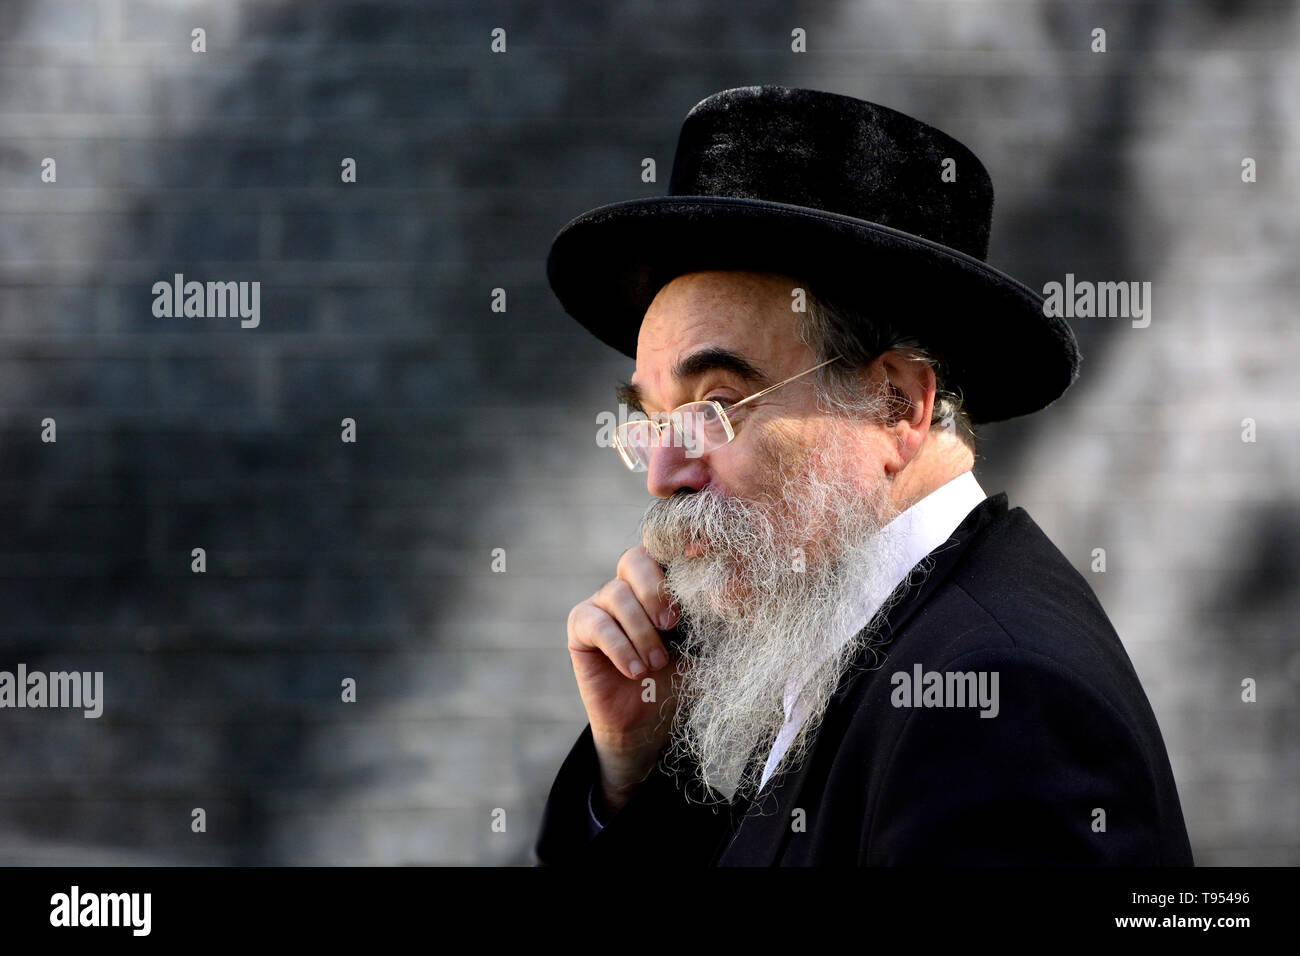 London, England, UK. Abraham Pinter - Haredi Rabbi/Politiker von Stamford Hill, stellt Haredi Interessen an der Londoner jüdischen Forum. Auf seinem Mobi Stockfoto